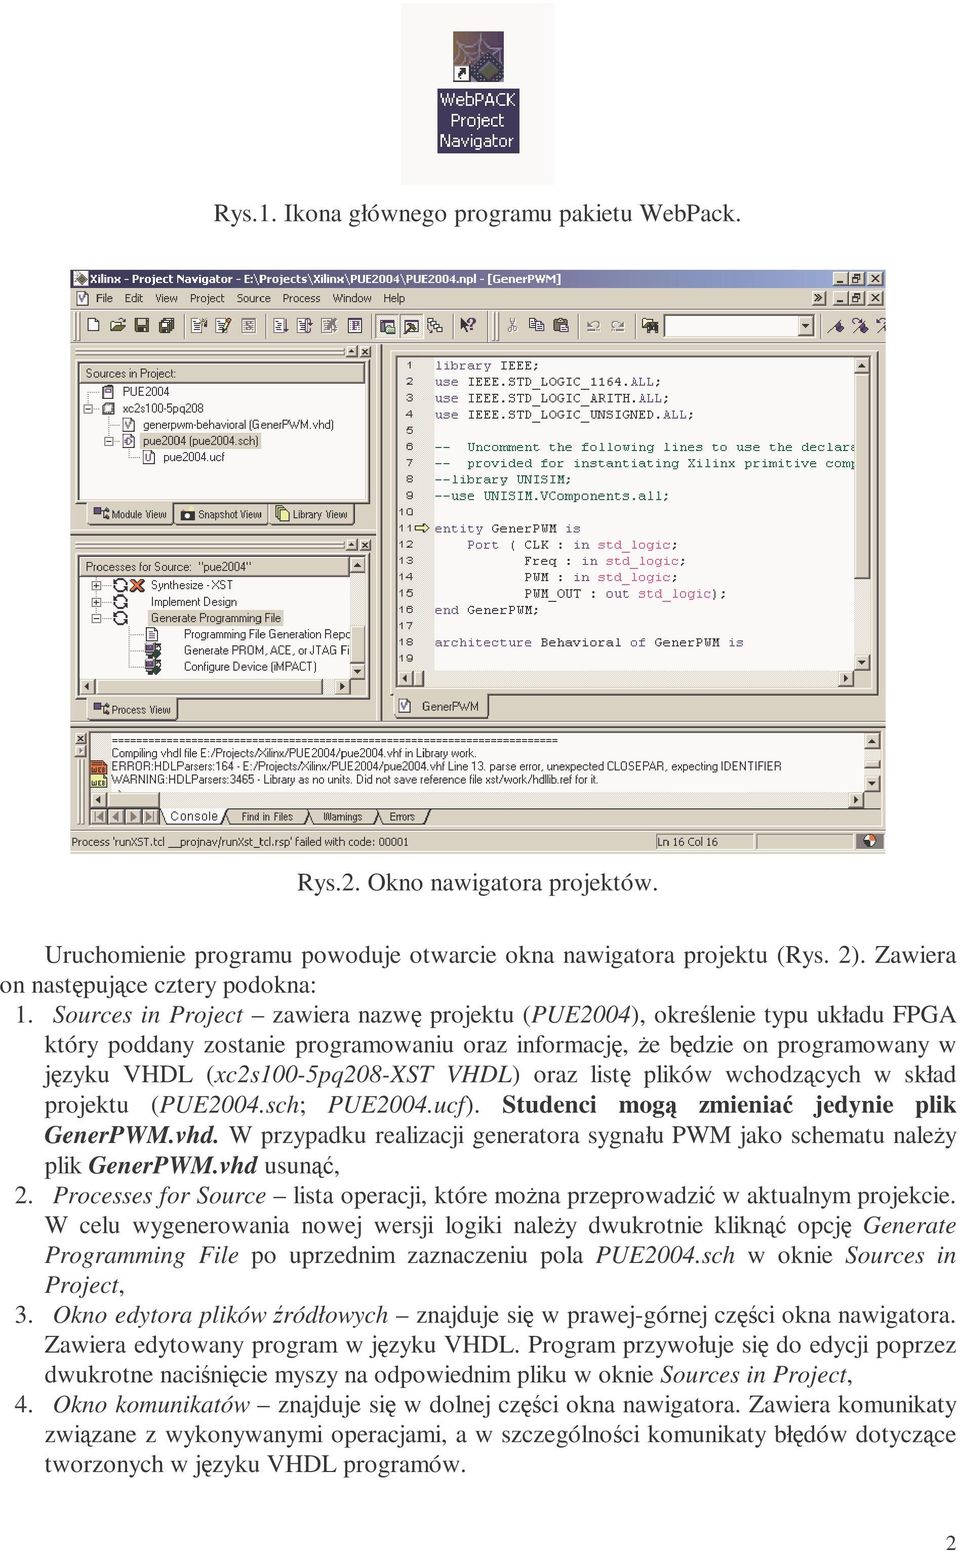 VHDL) oraz listę plików wchodzących w skład projektu (PUE2004.sch; PUE2004.ucf). Studenci mogą zmieniać jedynie plik GenerPWM.vhd.